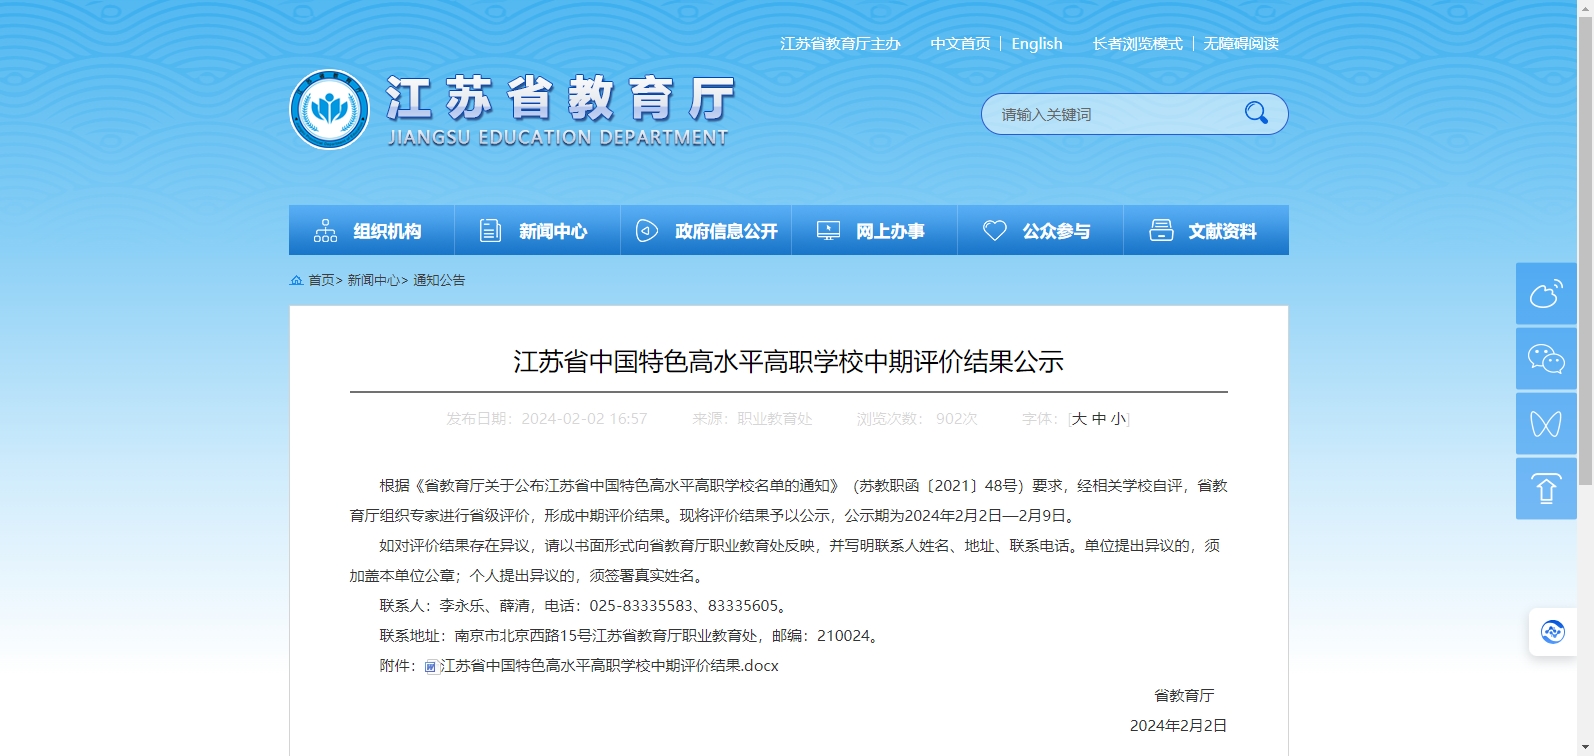 江苏省中国特色高水平高职学校中期评价结果公示